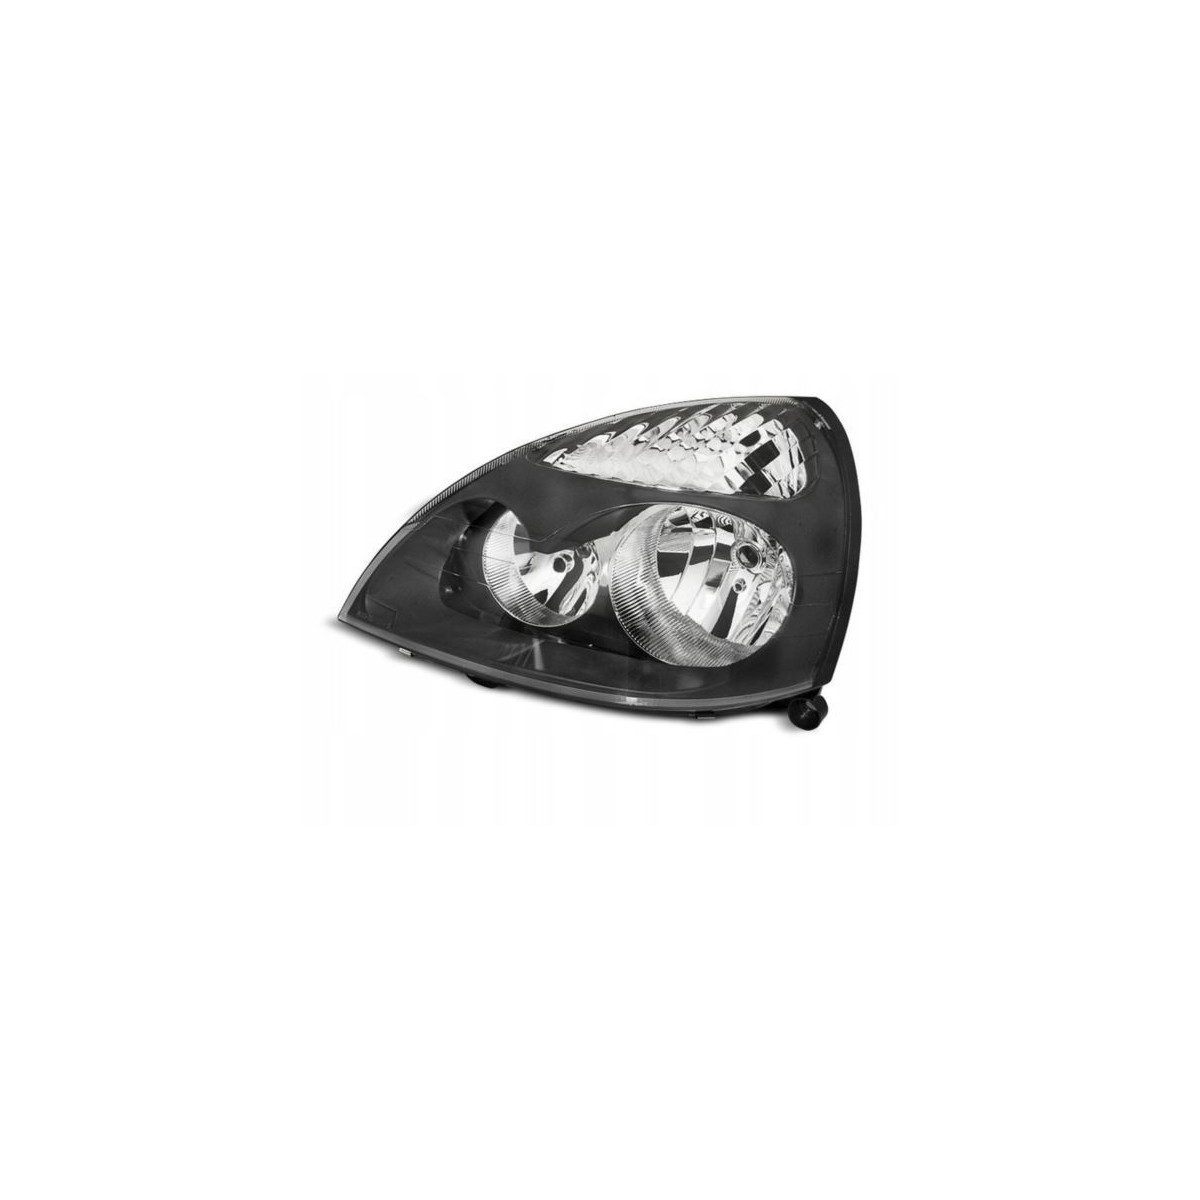 LAMPA PRZEDNIA RENAULT CLIO II 06.01-09.05 BLACK